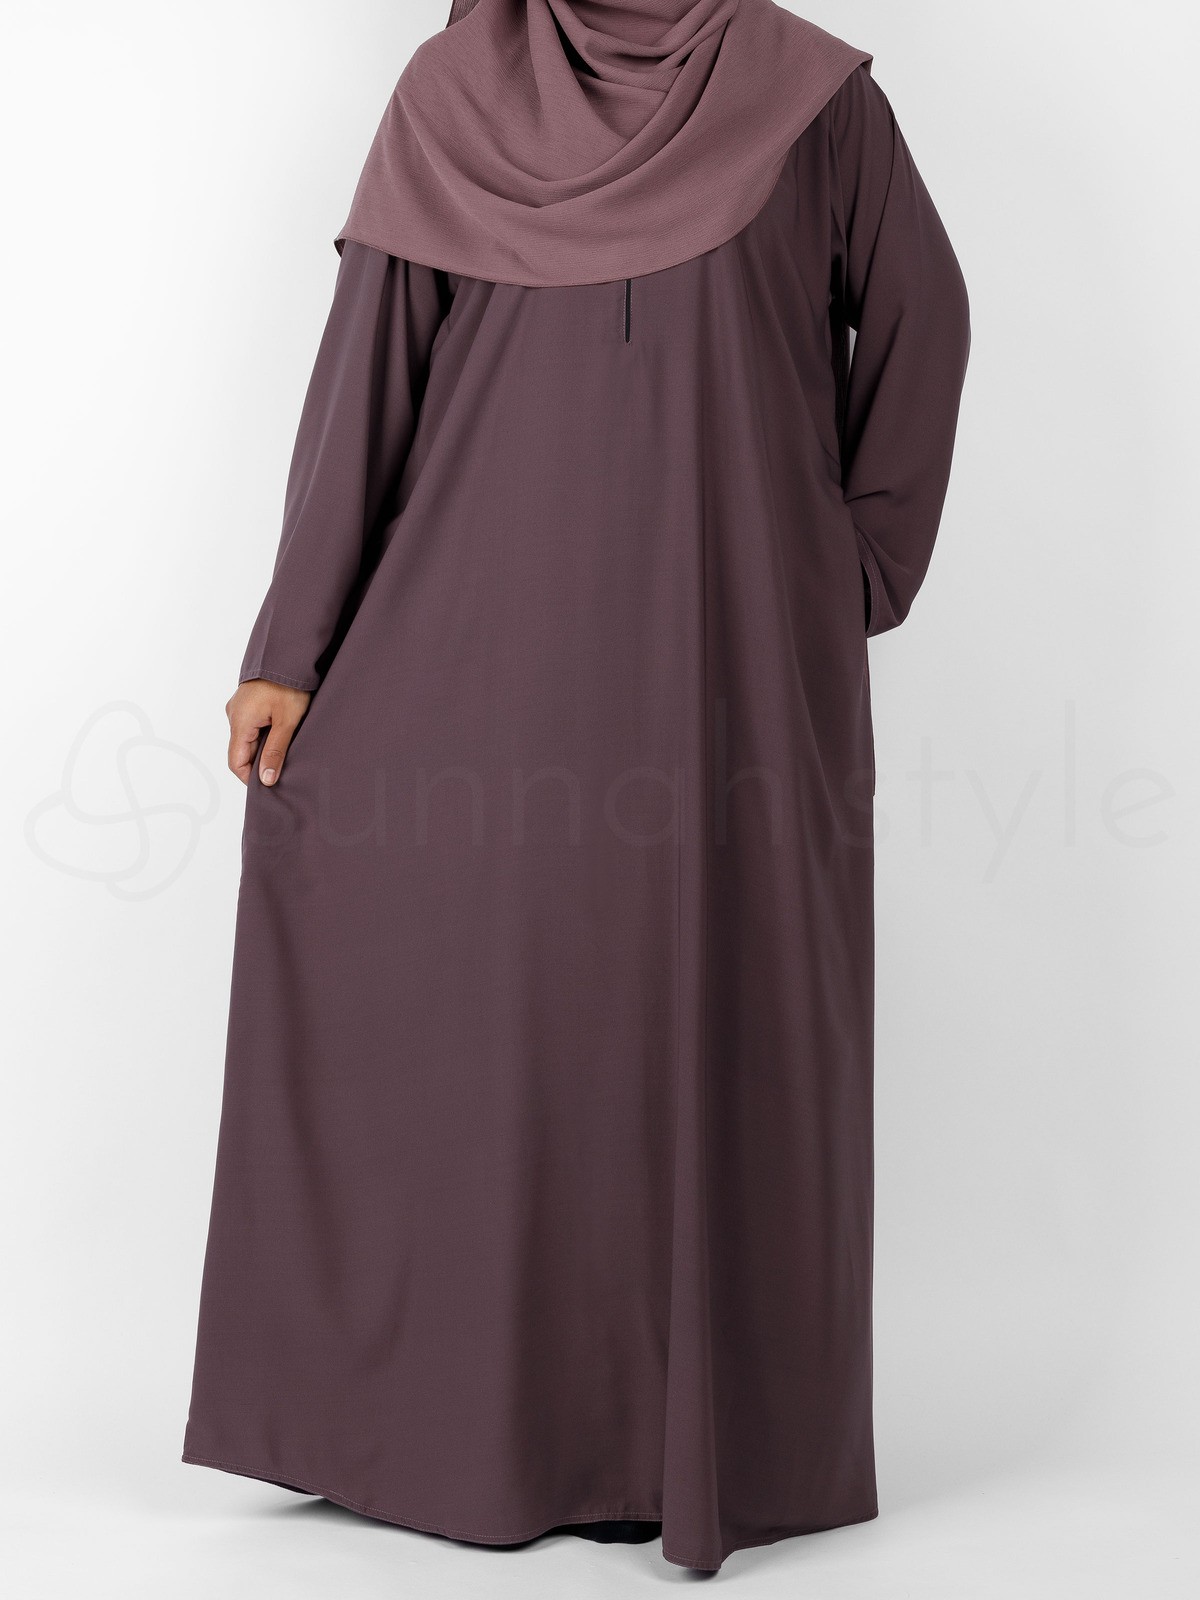 Sunnah Style - Plain Closed Abaya (Dried Lavender)